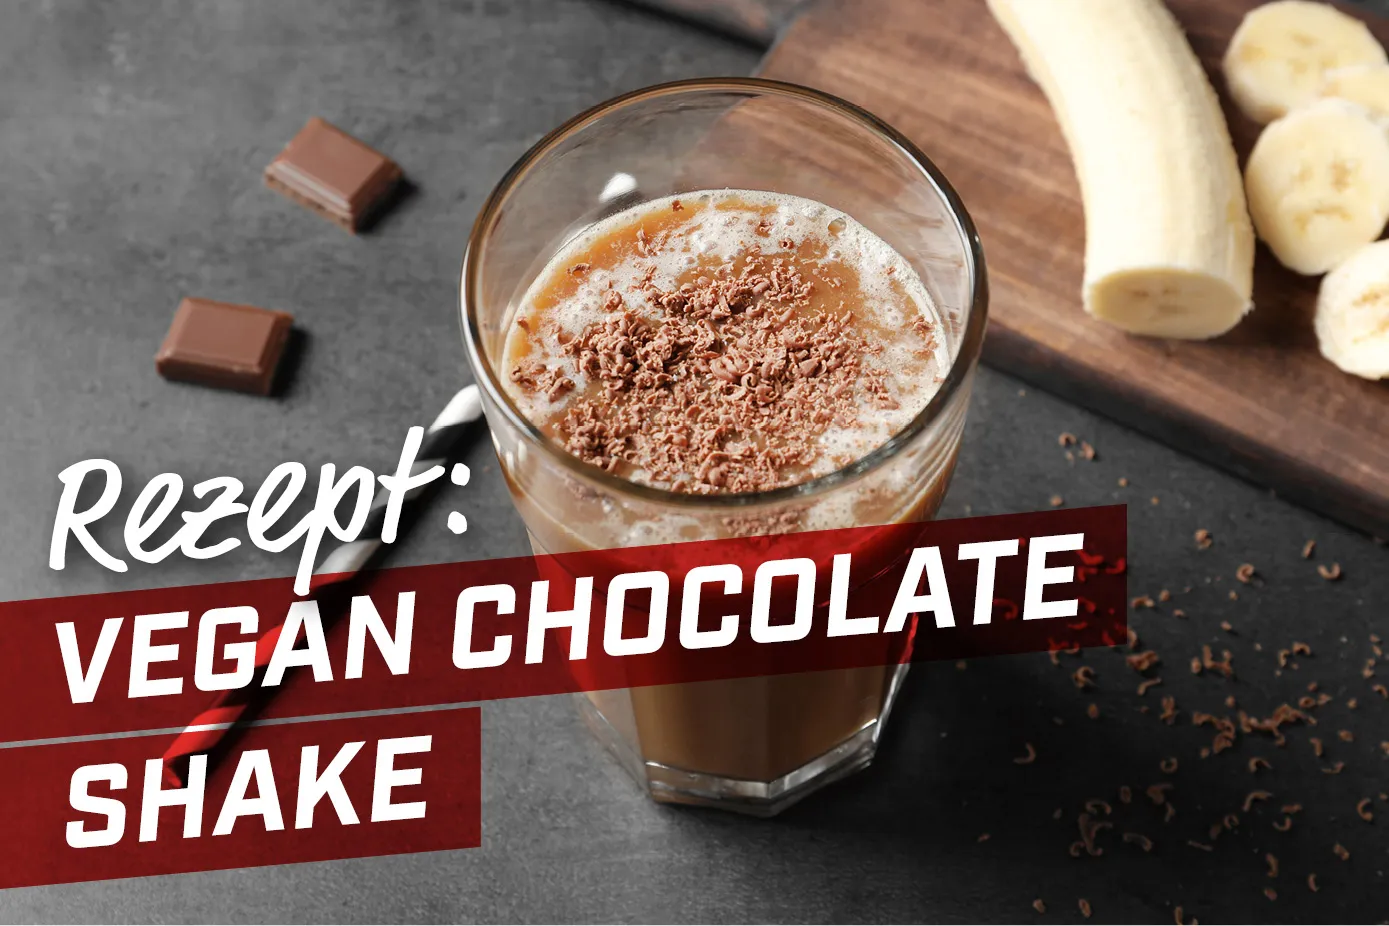 25-01-18-vegan-chocolate-shake-energybody